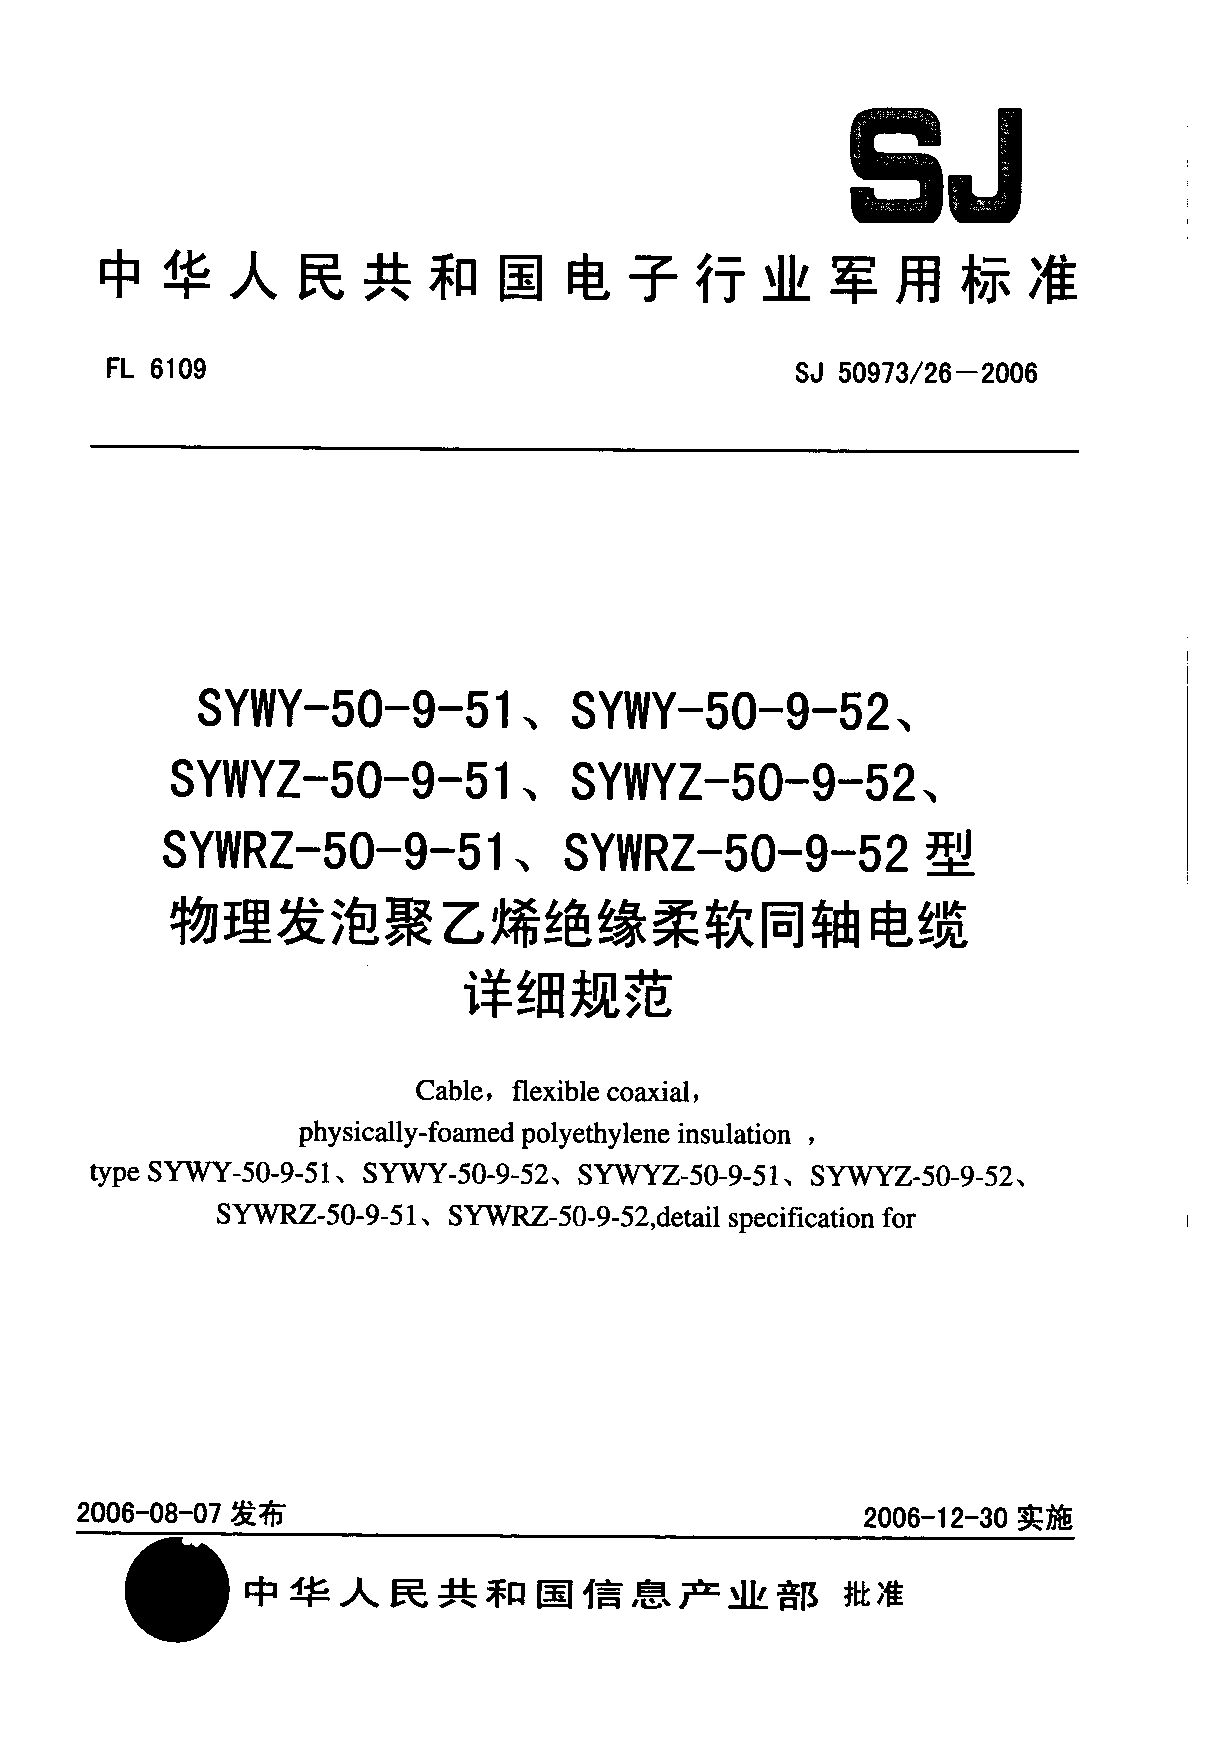 SJ 50973/26-2006封面图